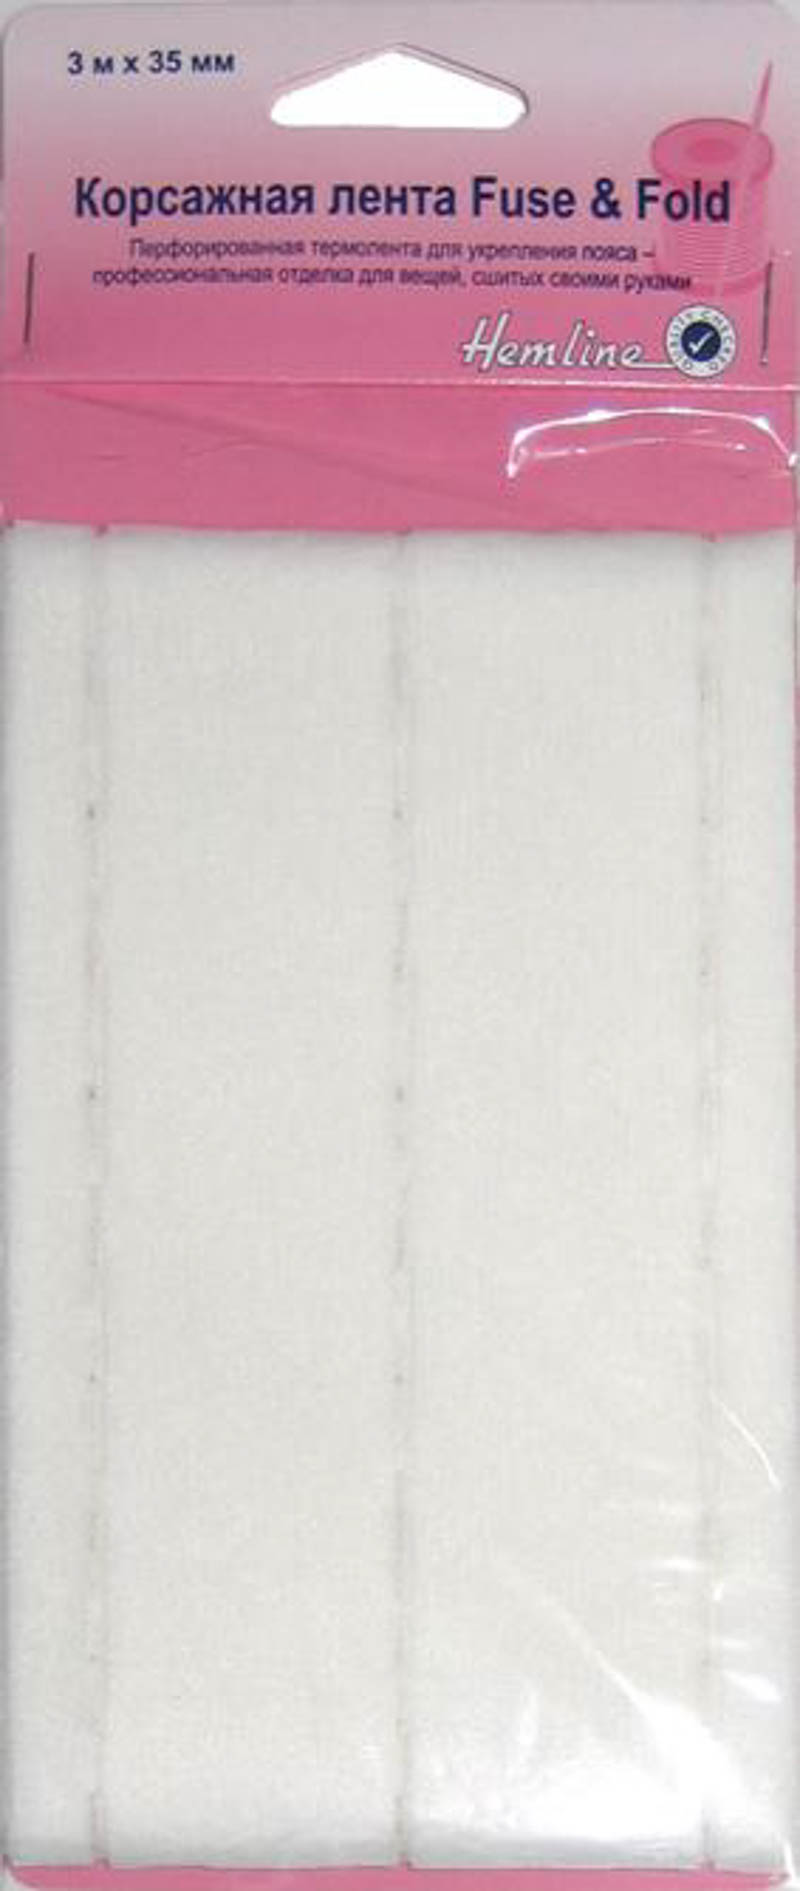 Корсажная лента Fuse&Fold "Hemline" 3 м х 35 мм, белый